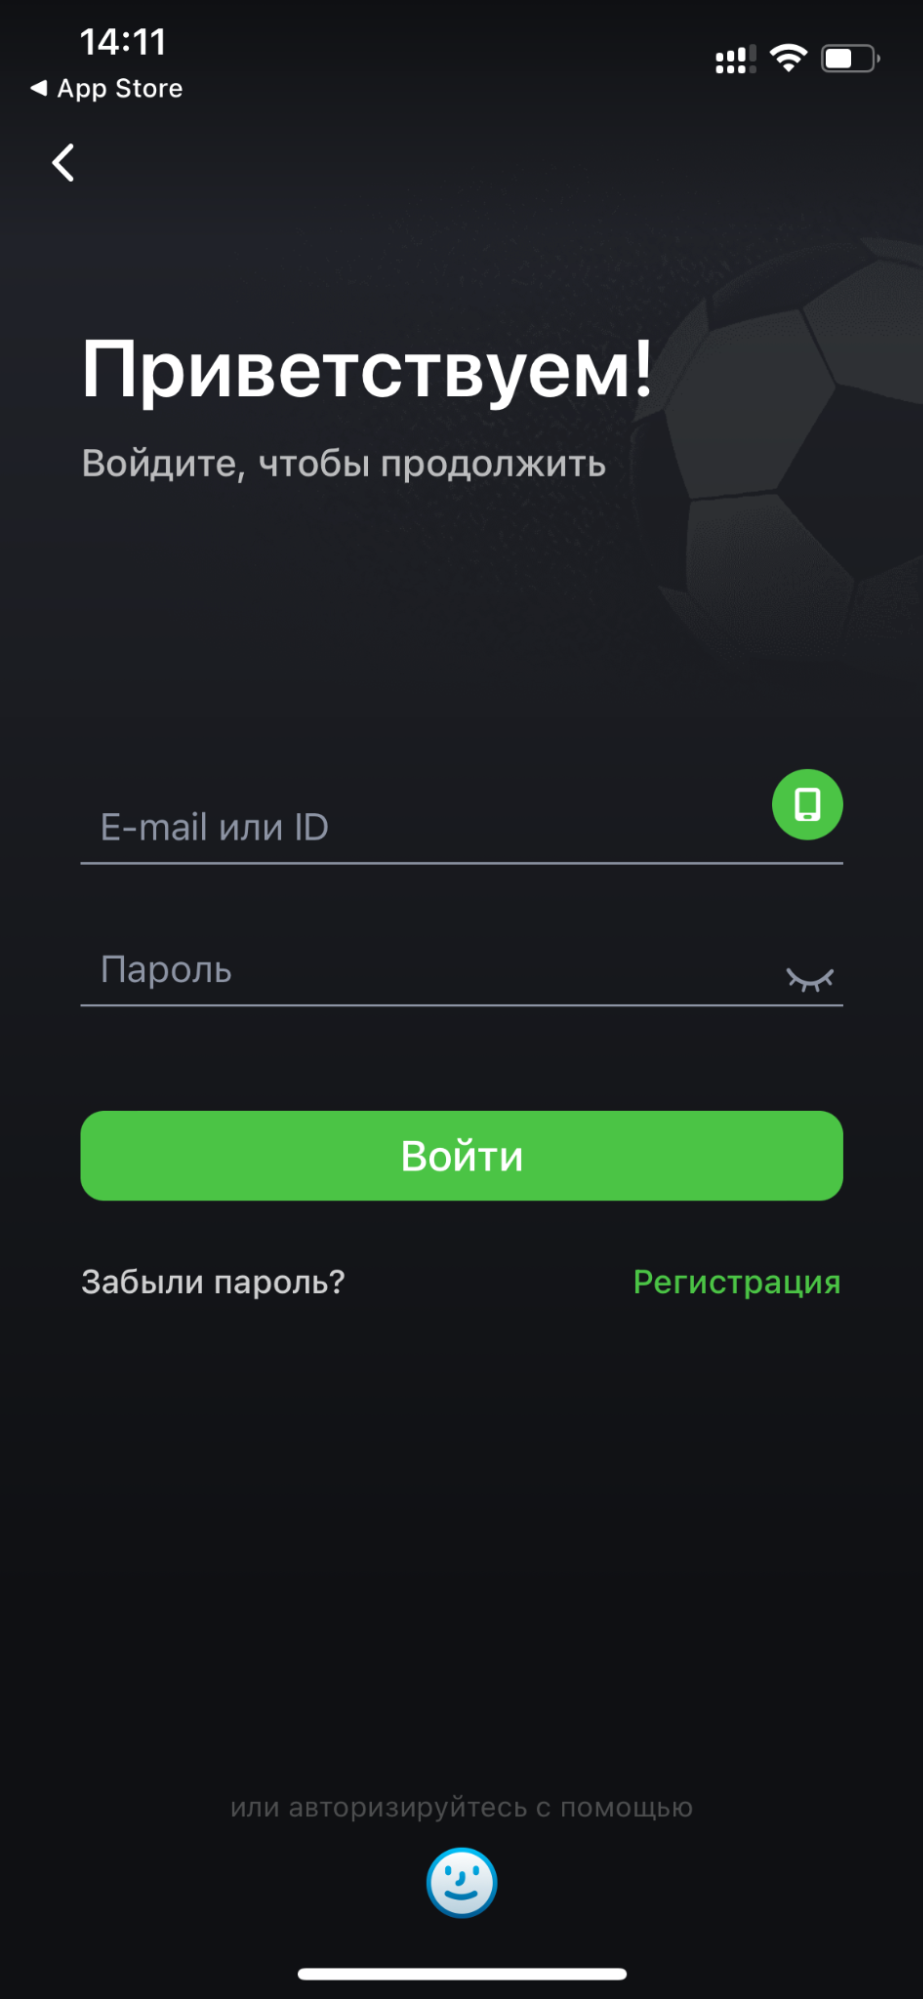 Форма авторизации в приложении БК Astrabet для iOS